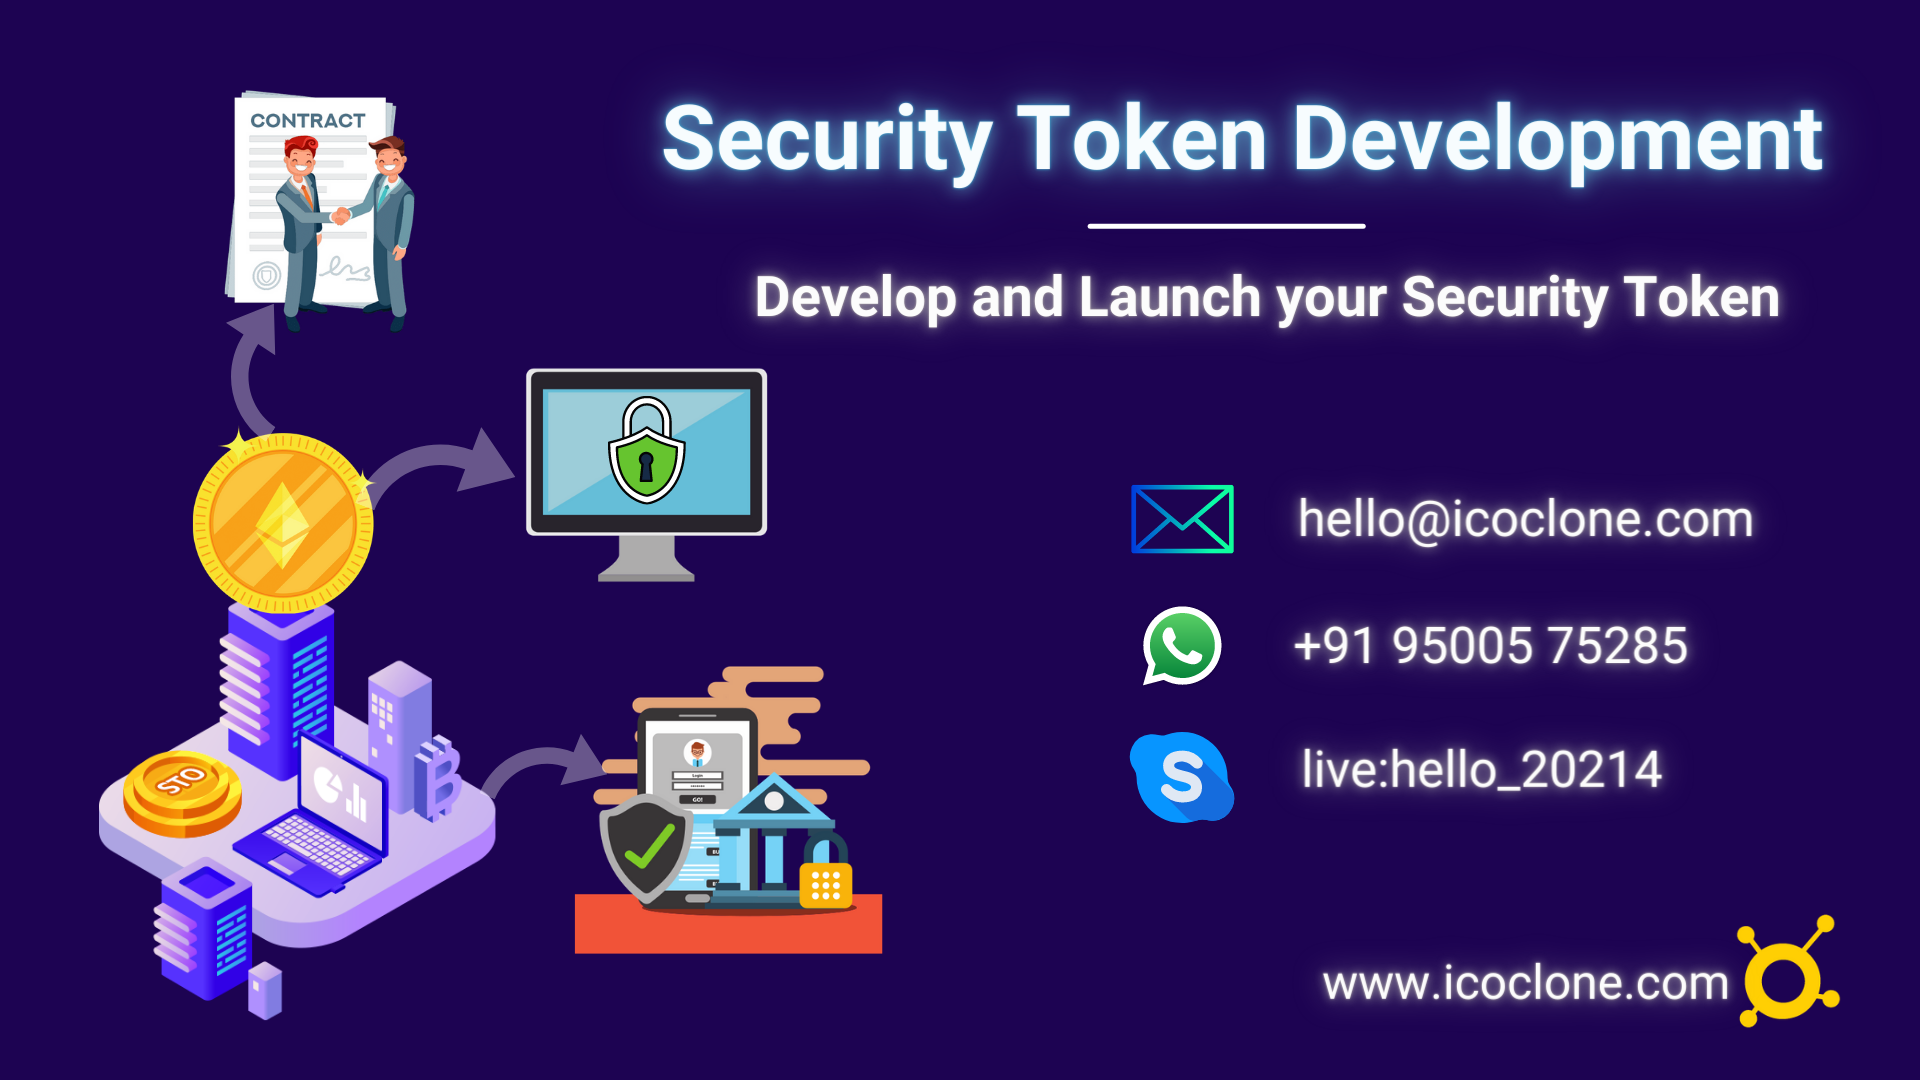 Security Token Development Services | Create a Security Token